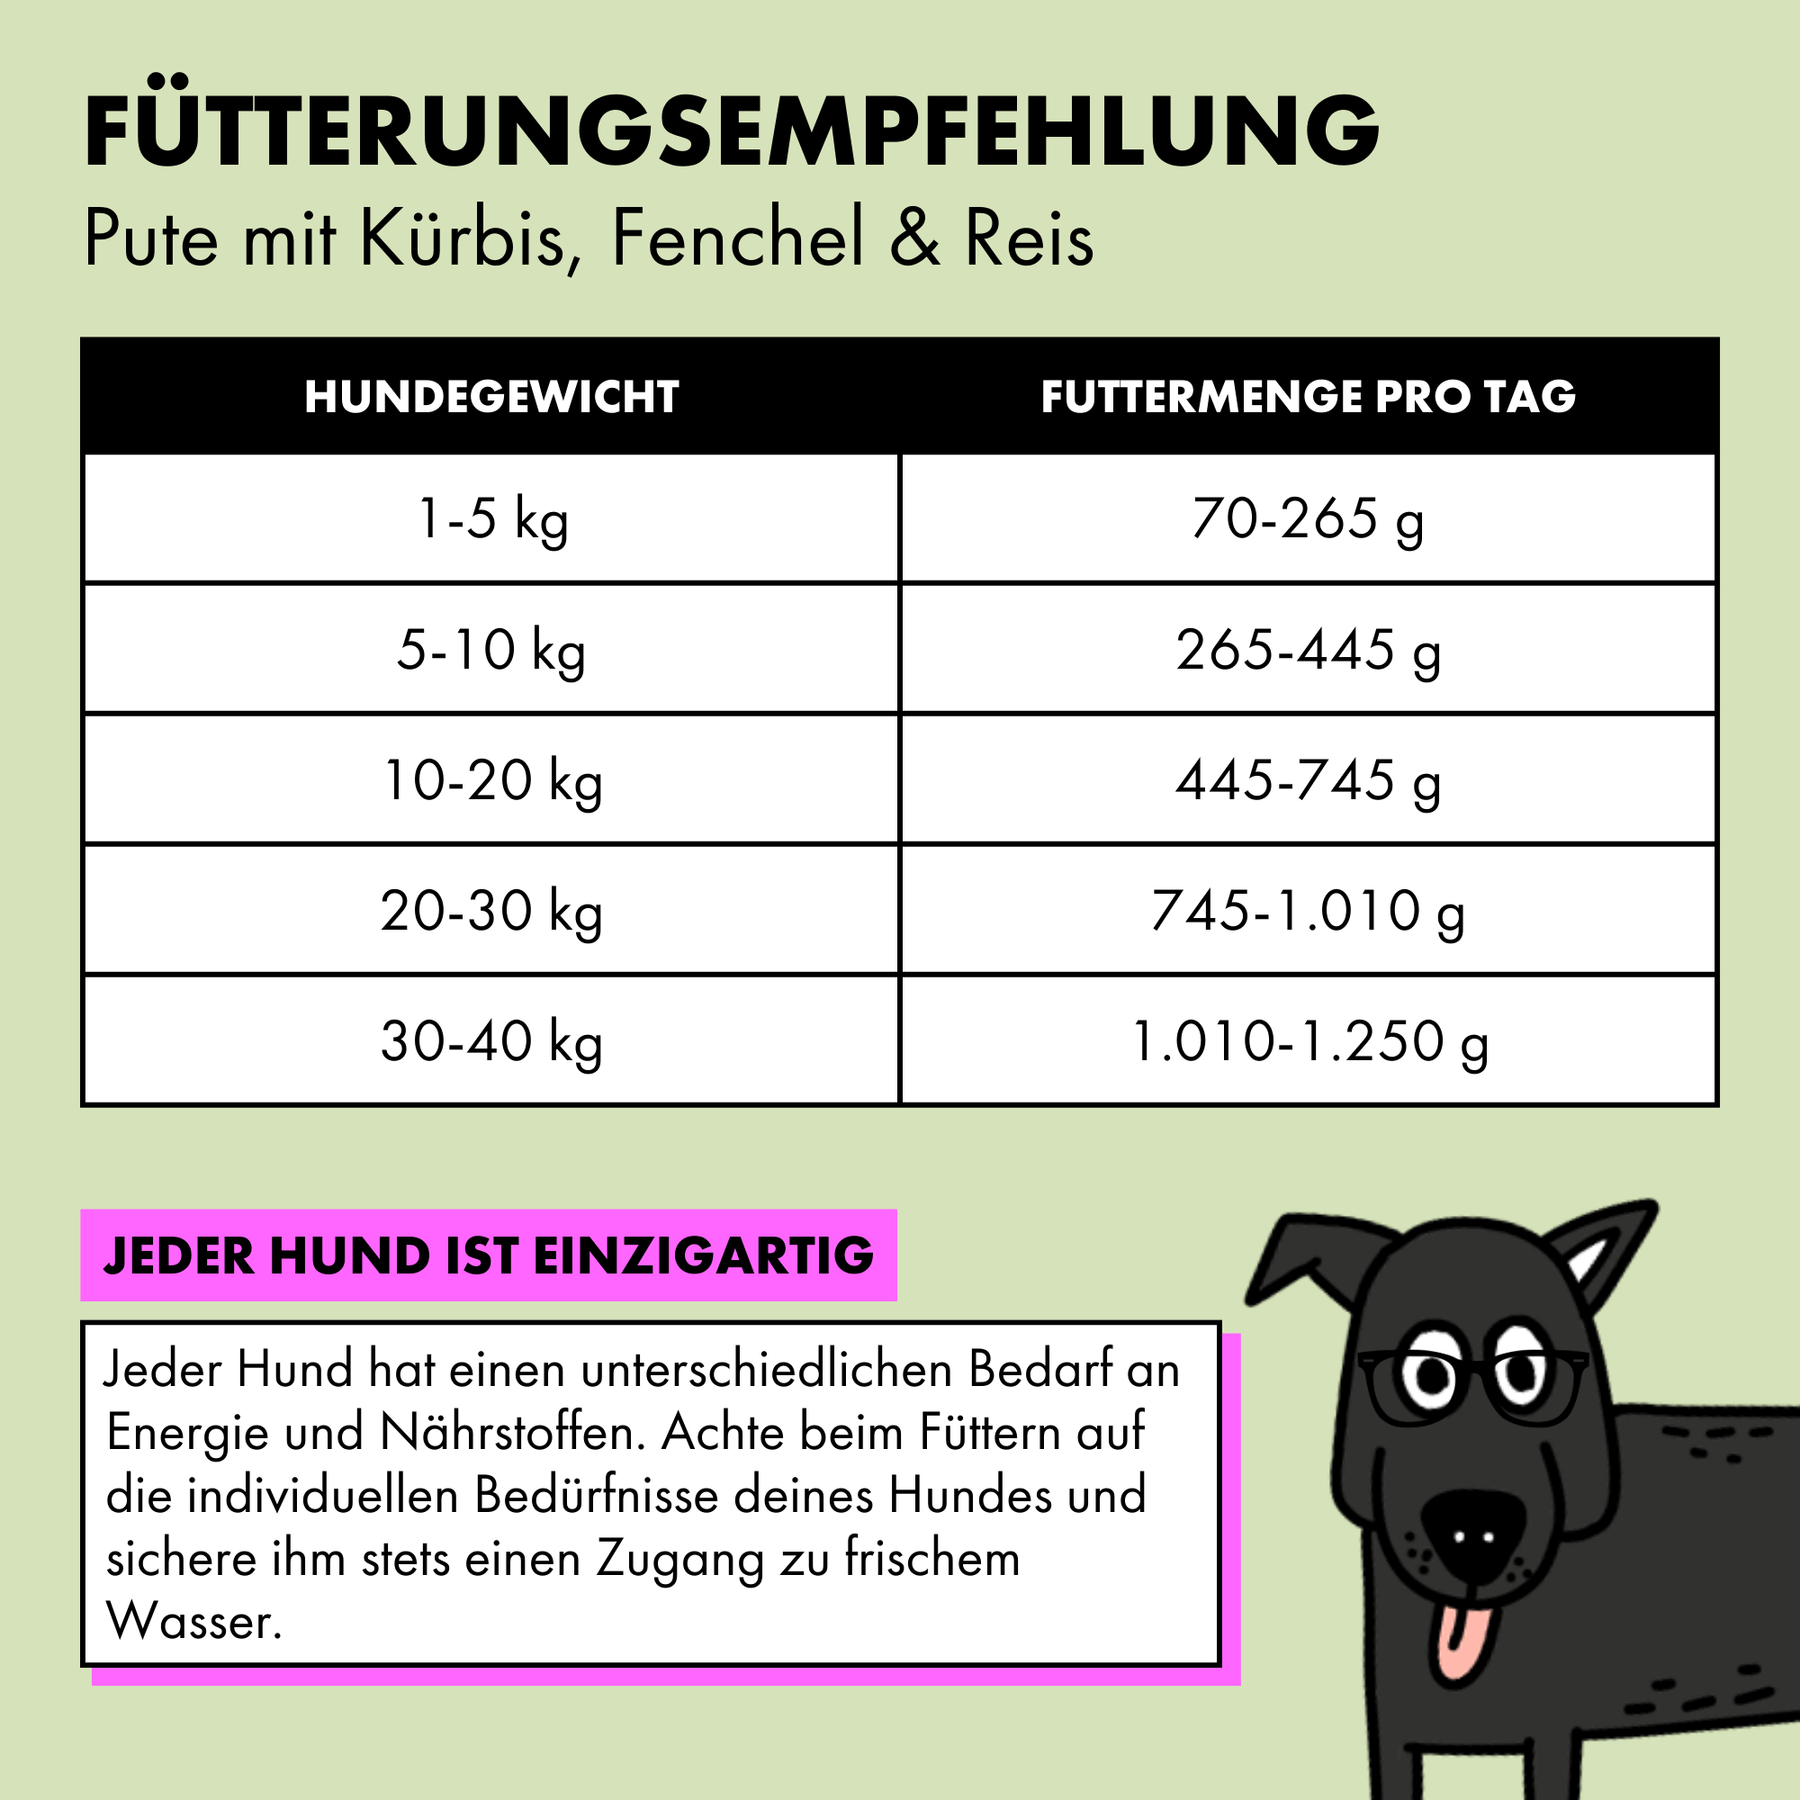 Jede Sorte des STRAYZ Futters hat eine unterschiedliche Fütterungsempfehlung. Ein 10 kg schwerer Hund braucht ca. 445 g Futter am Tag.